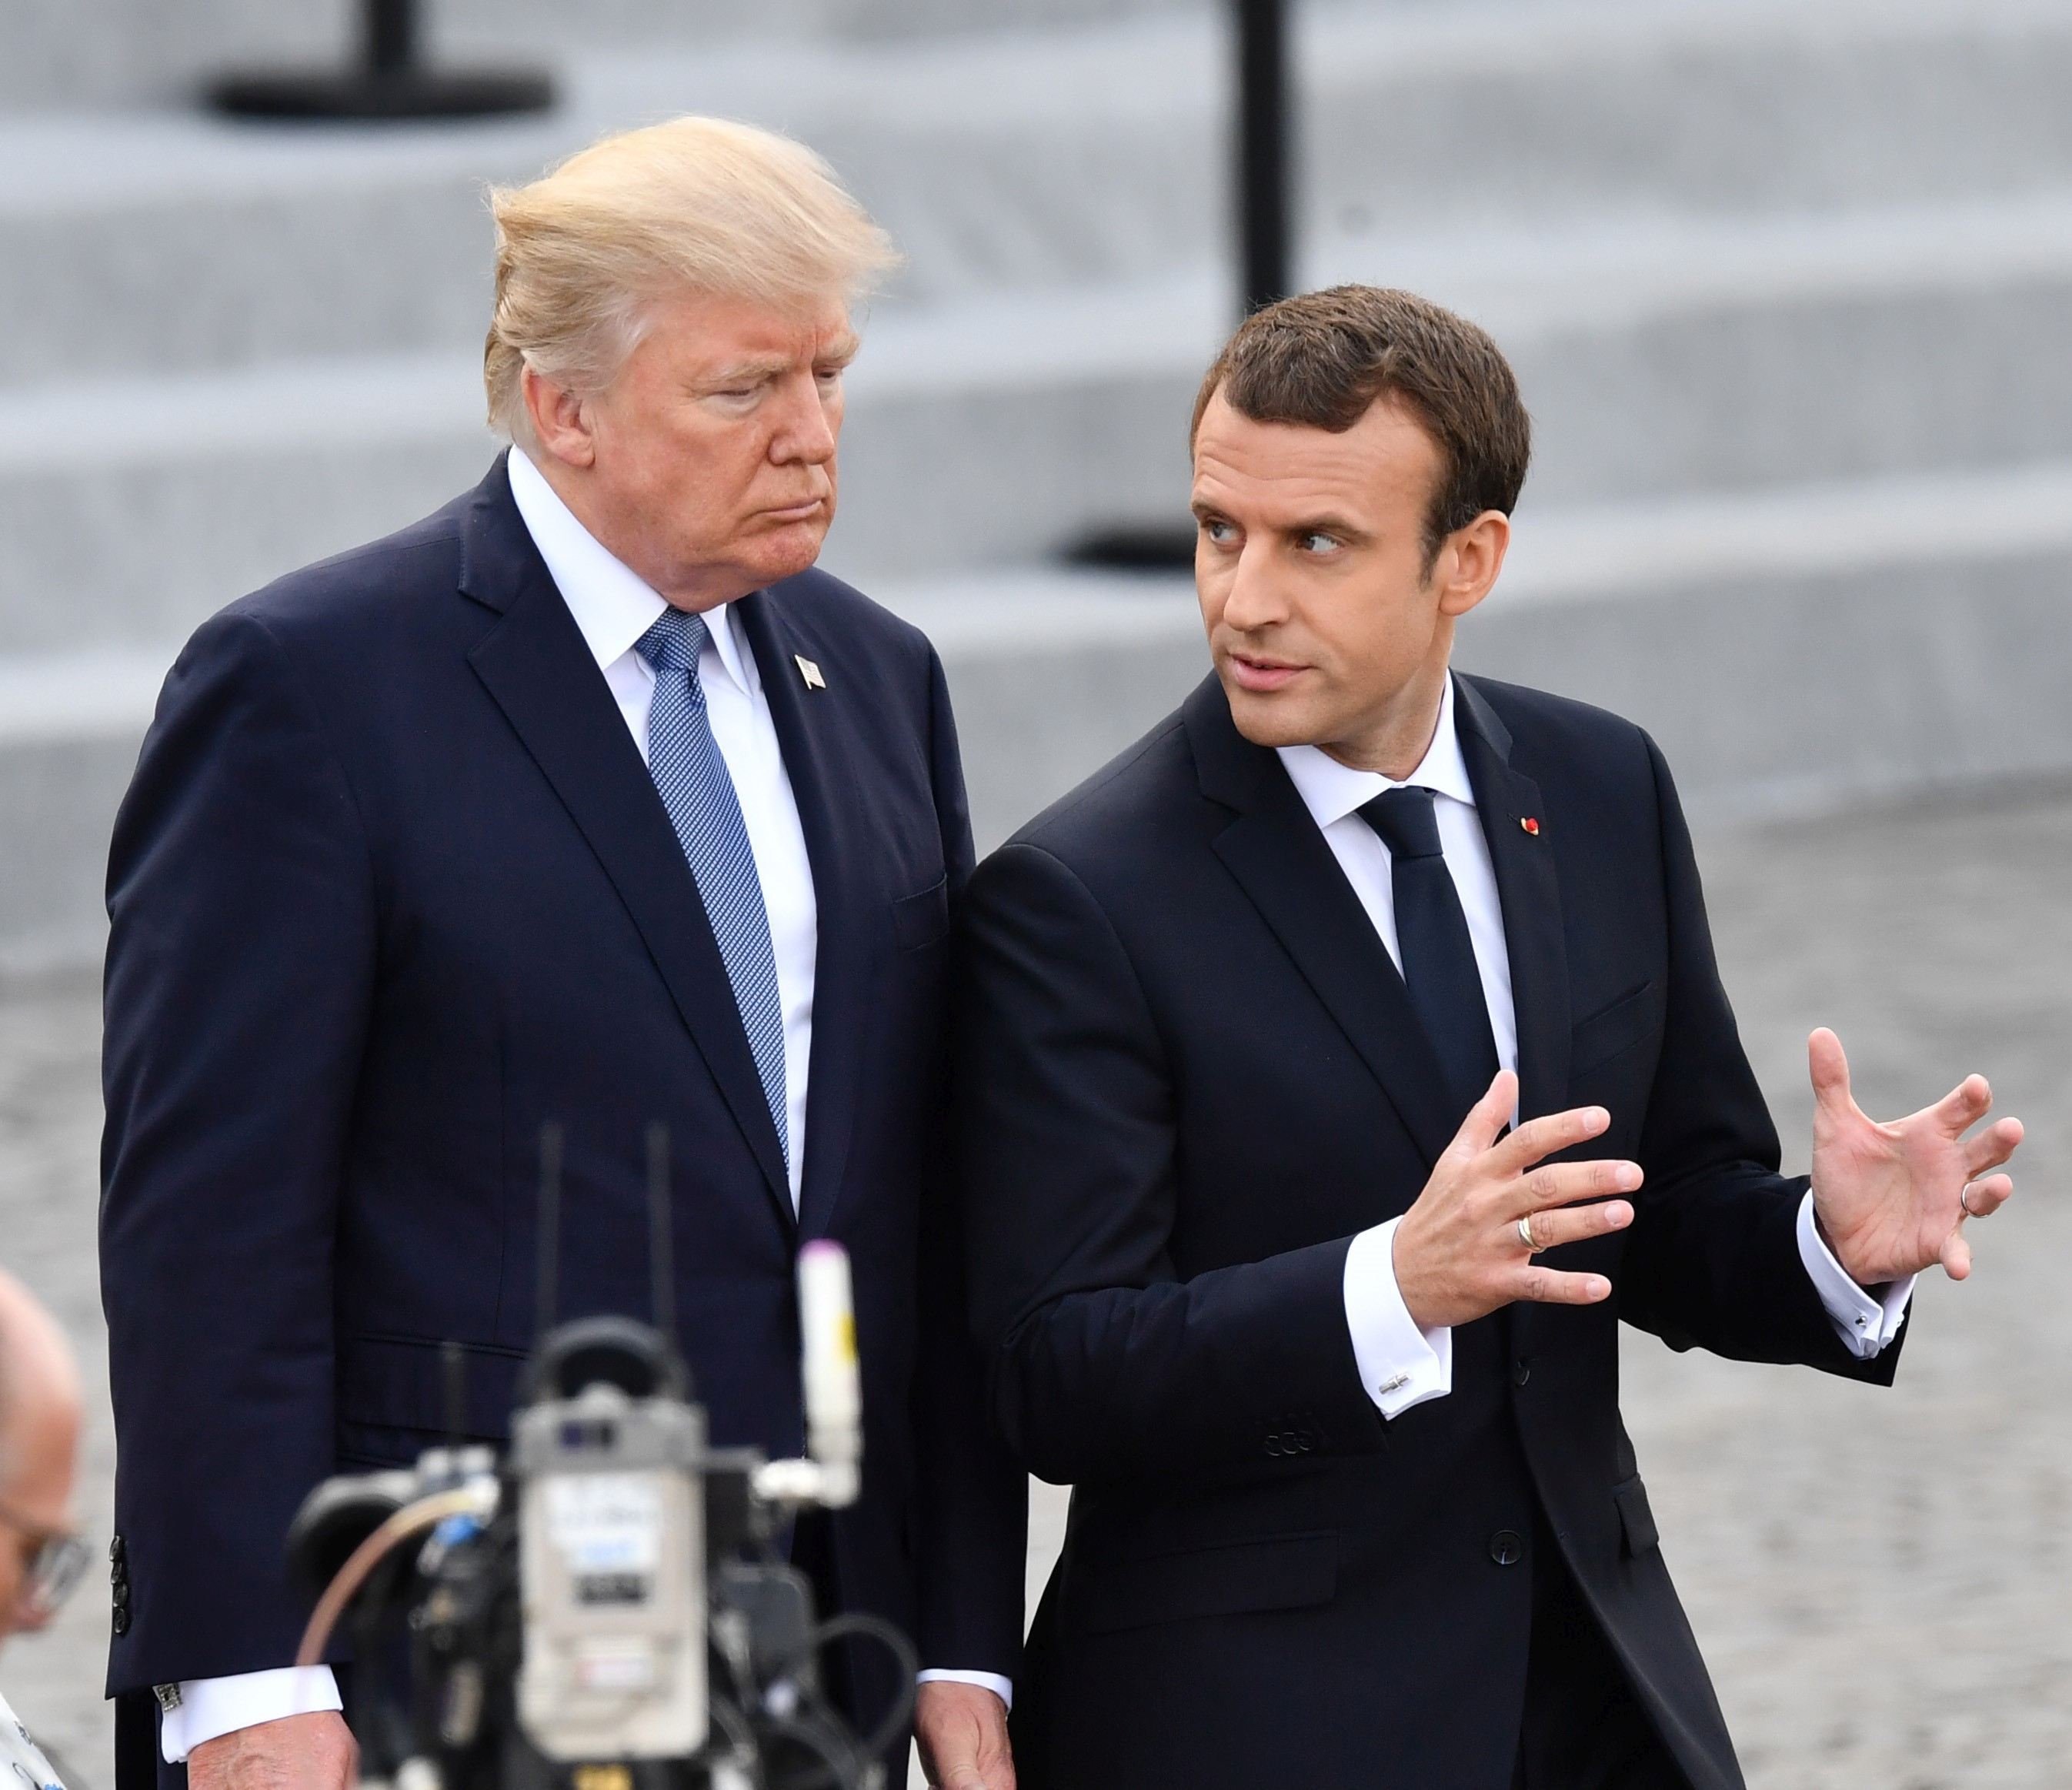 Ce au discutat preşedintele SUA şi preşedintele Franţei la summitul NATO: Trump a avut o discuţie în contradictoriu cu Macron, privind lupta împotriva grupării teroriste Stat Islamic